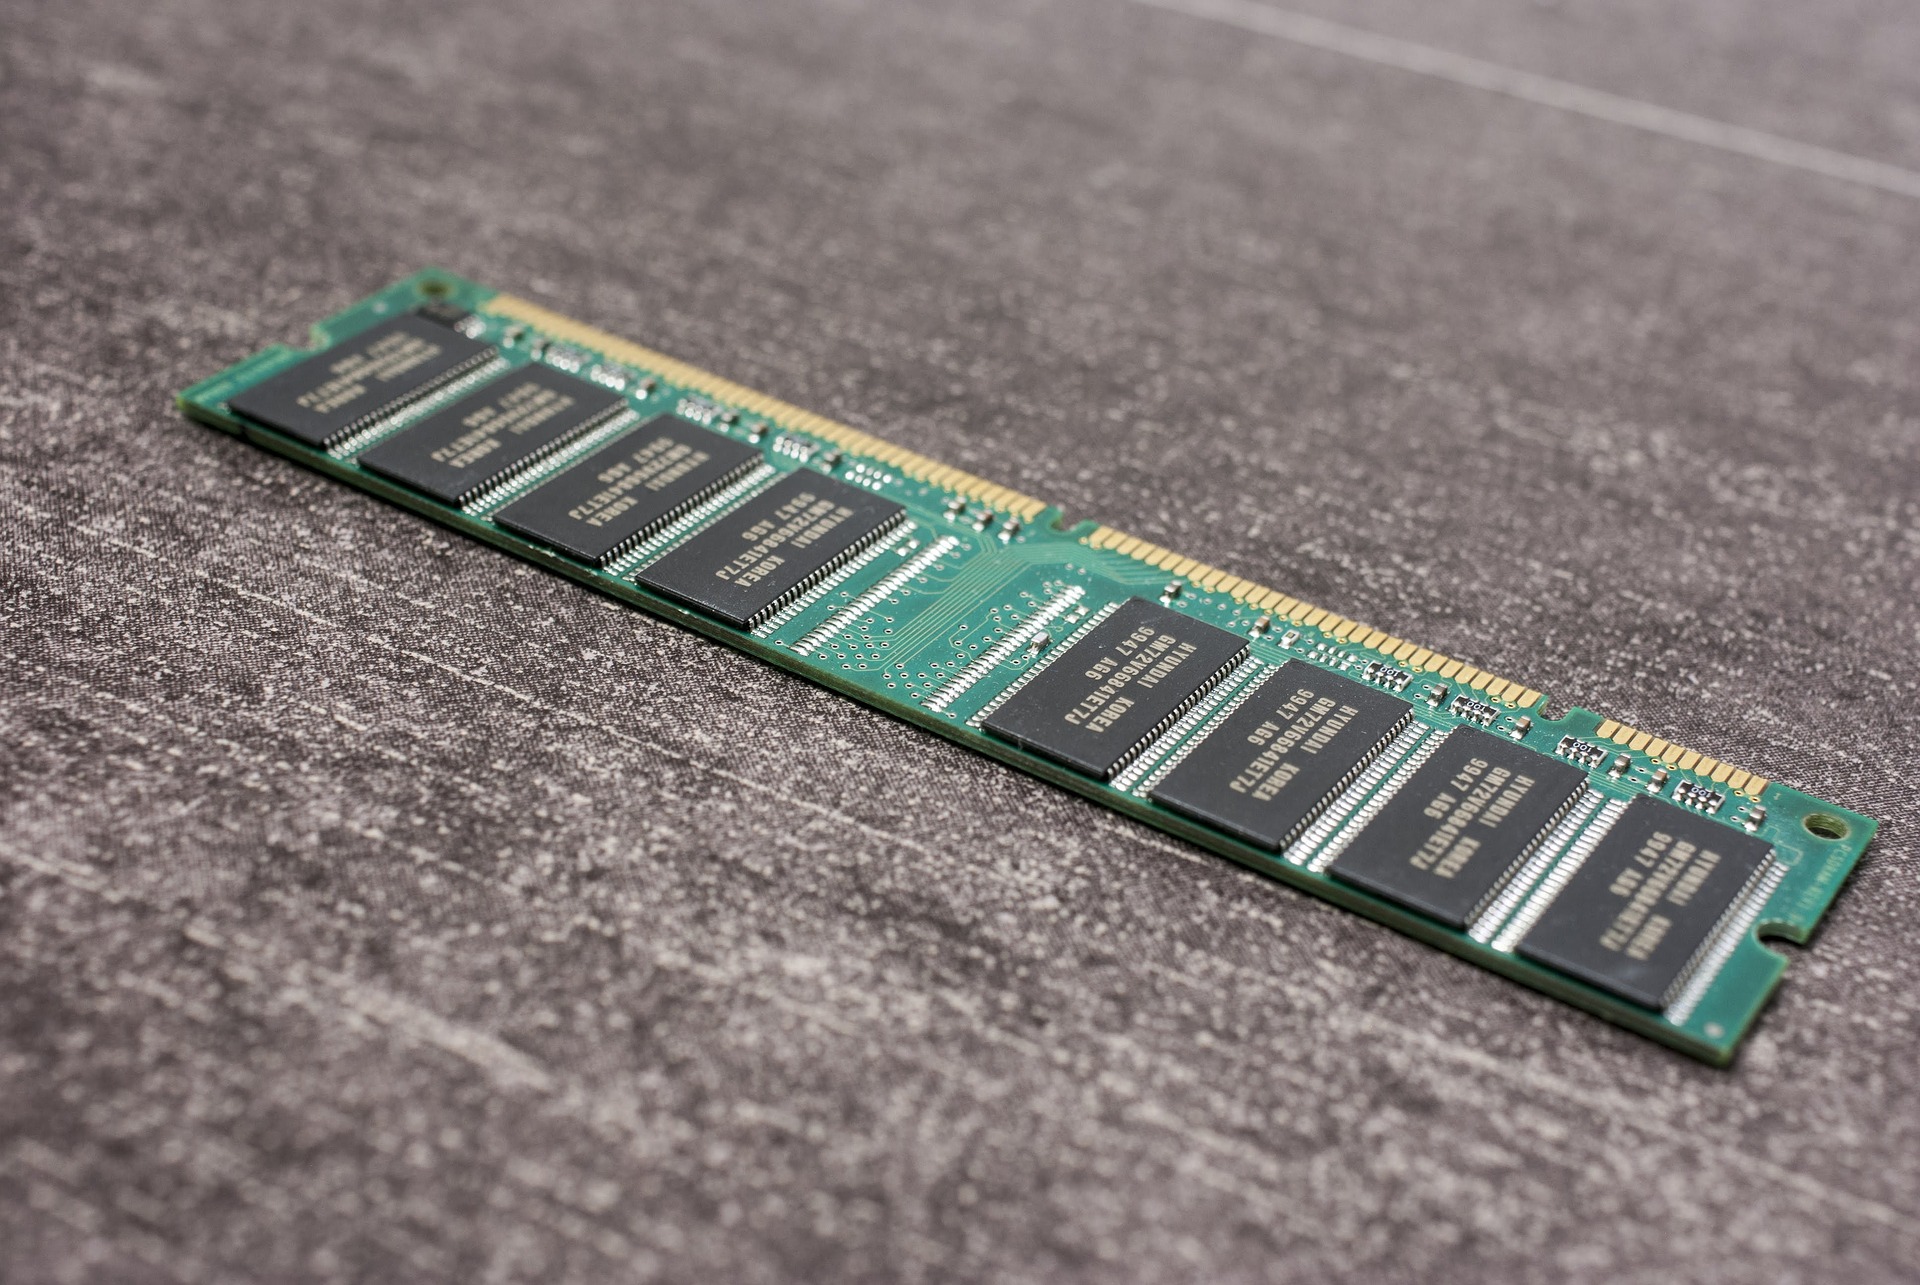 האם לבחור בלוח אם וזכרונות DDR4 או DDR5? ההבדלים בביצועים וכדאיות הרכישה